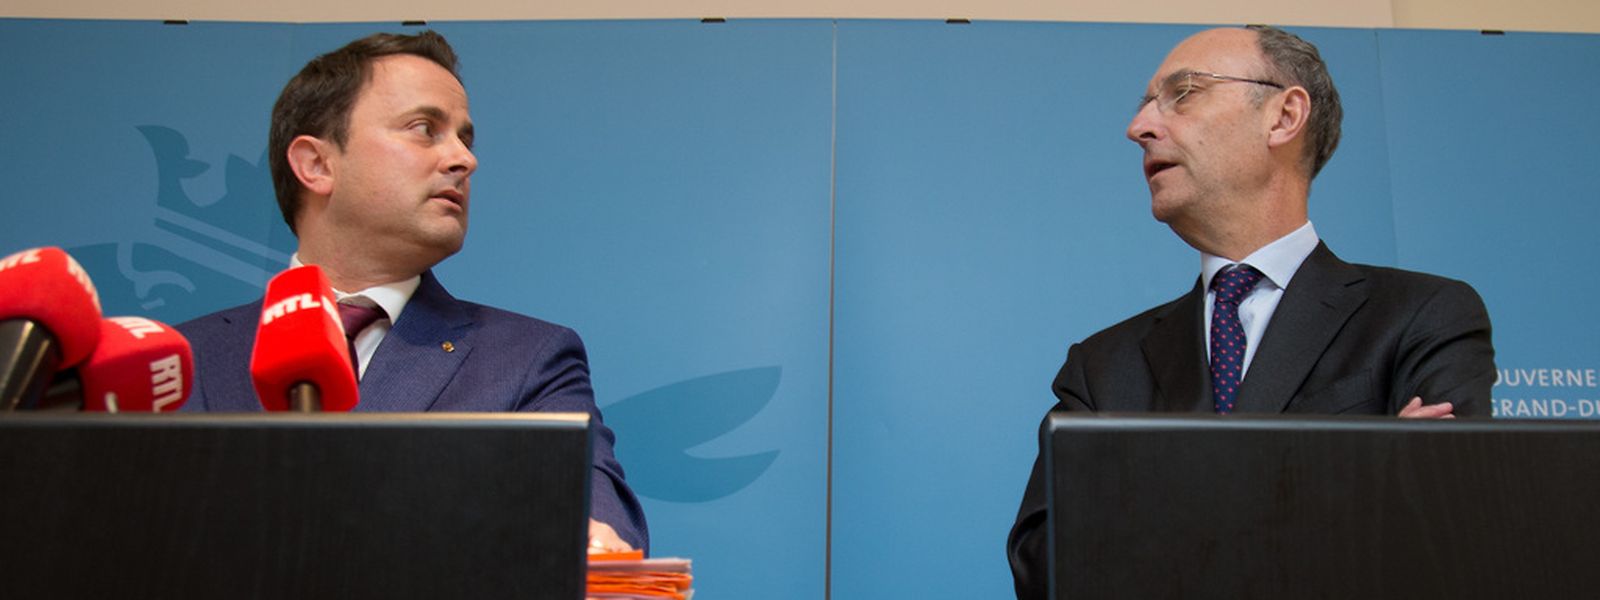 O primeiro-ministro, Xavier Bettel, e o presidente da UEL, Michel Wurth